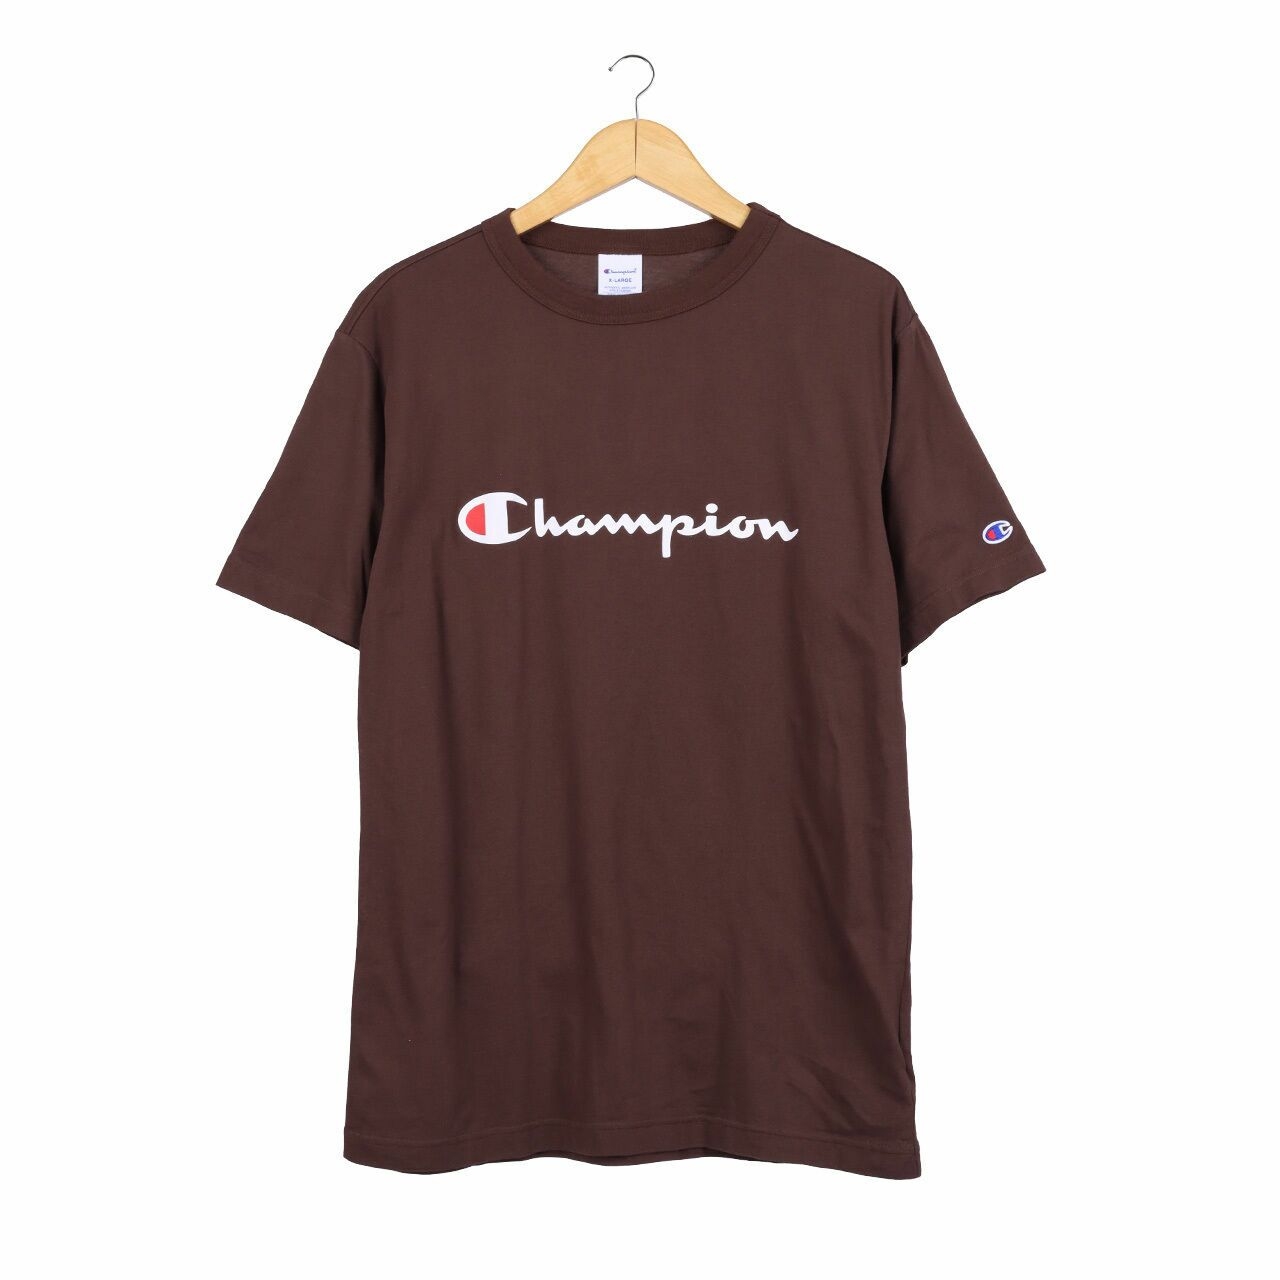 Champion Brown Tshirt